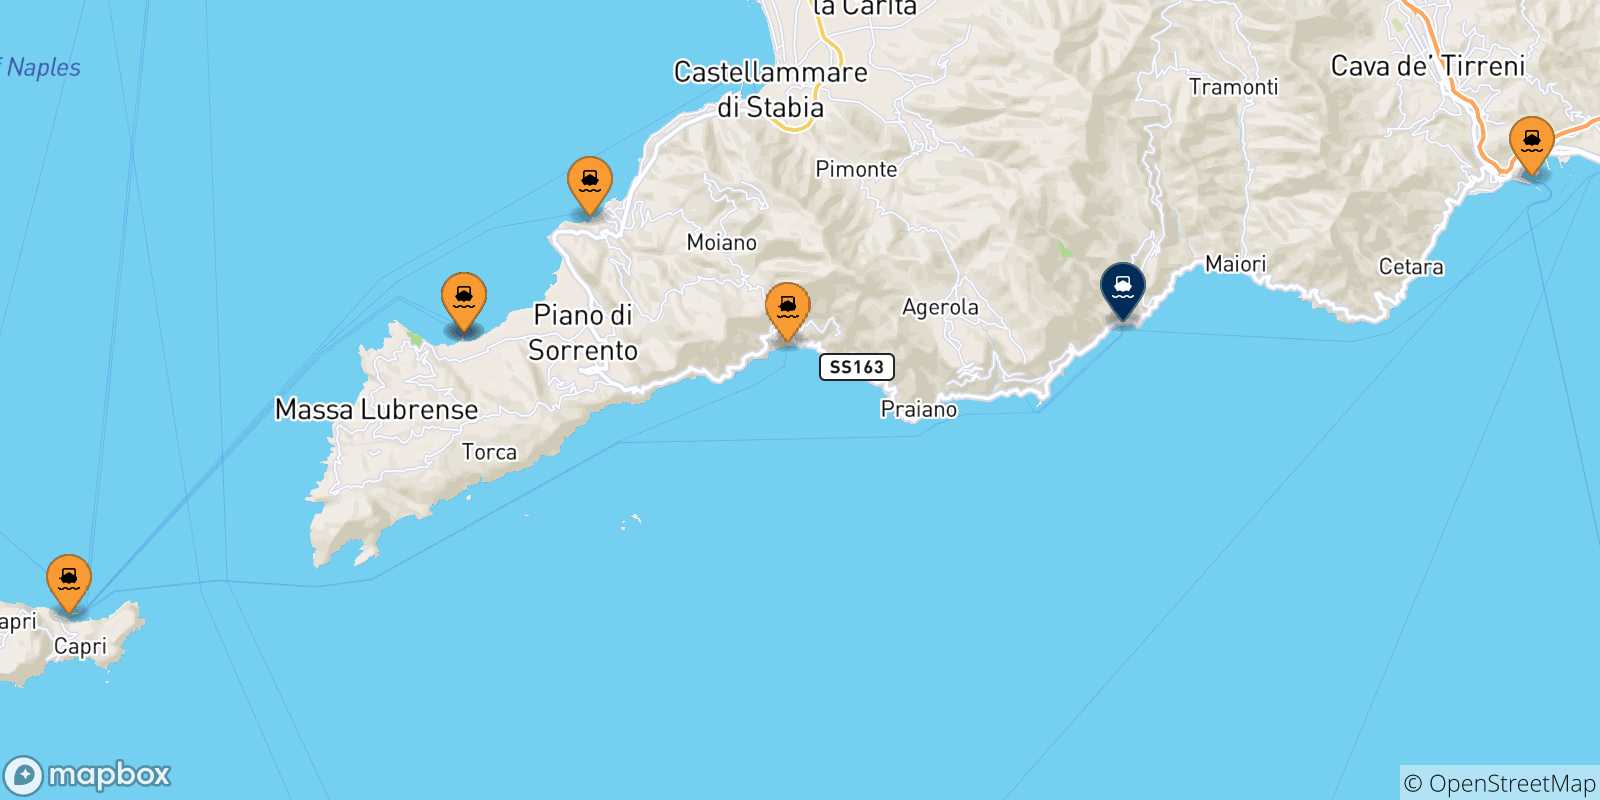 Mappa delle possibili rotte tra l'Italia e Amalfi